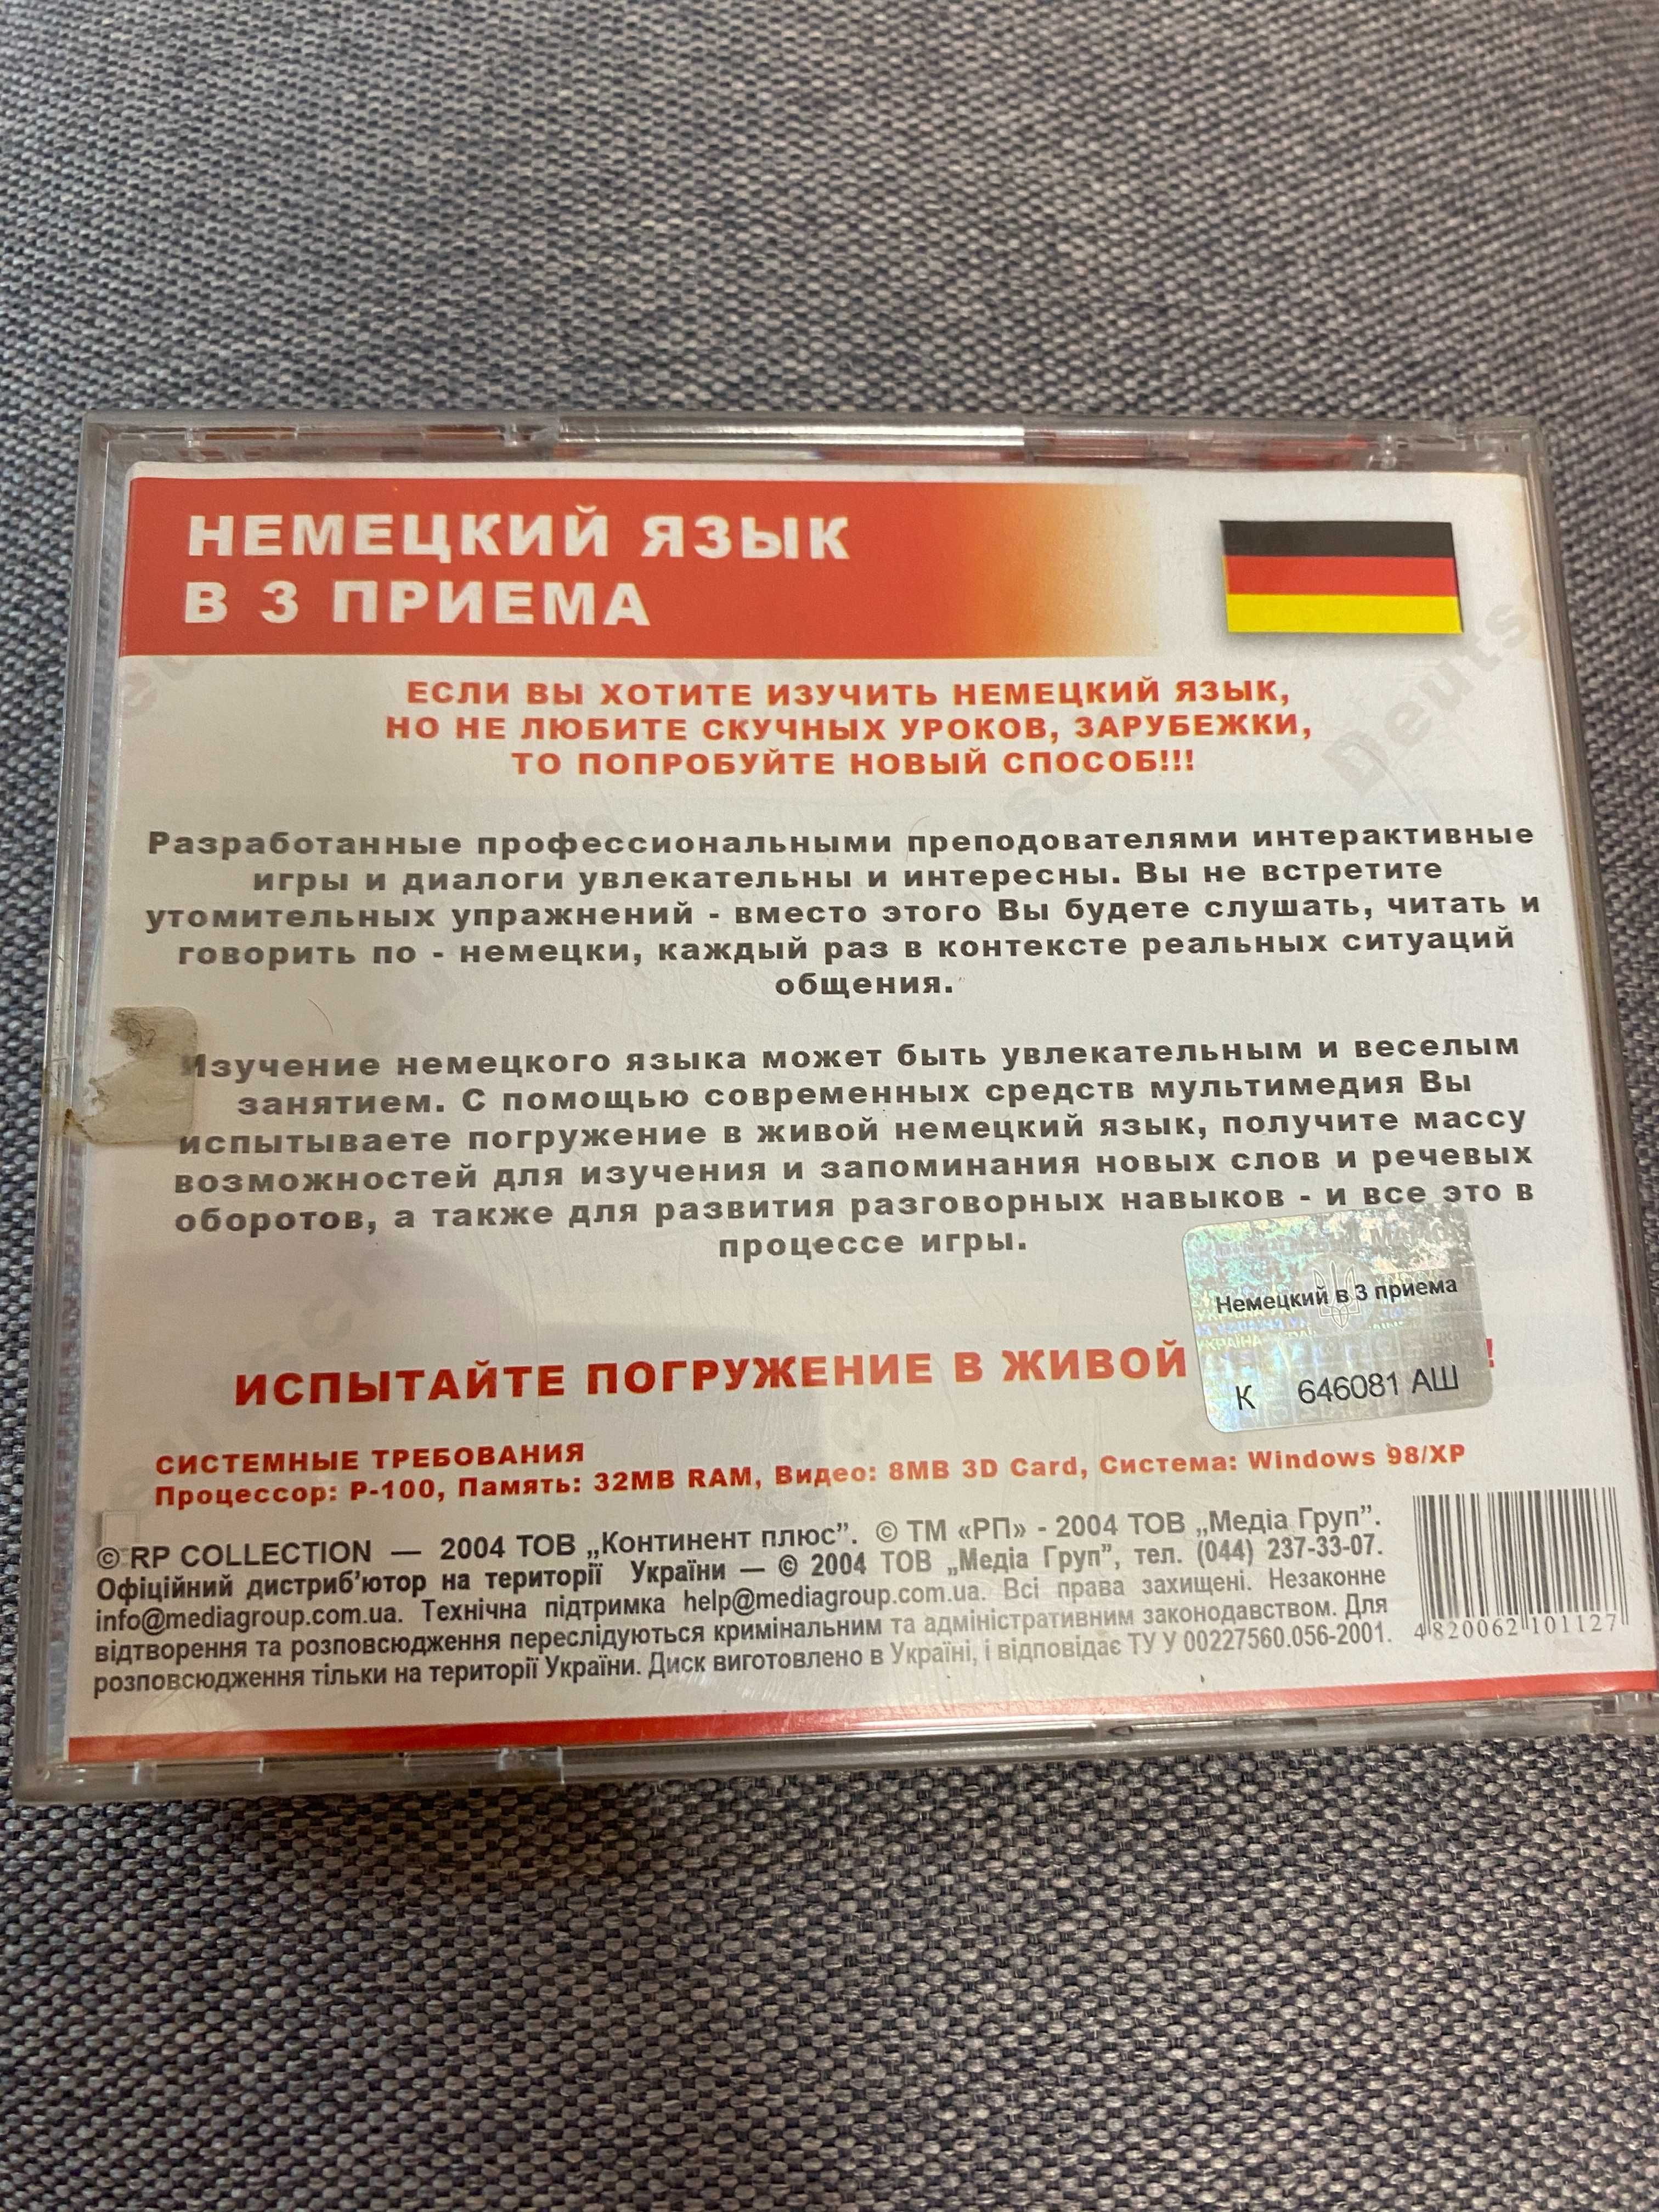 Німецька граматика аудіо диск 50грн